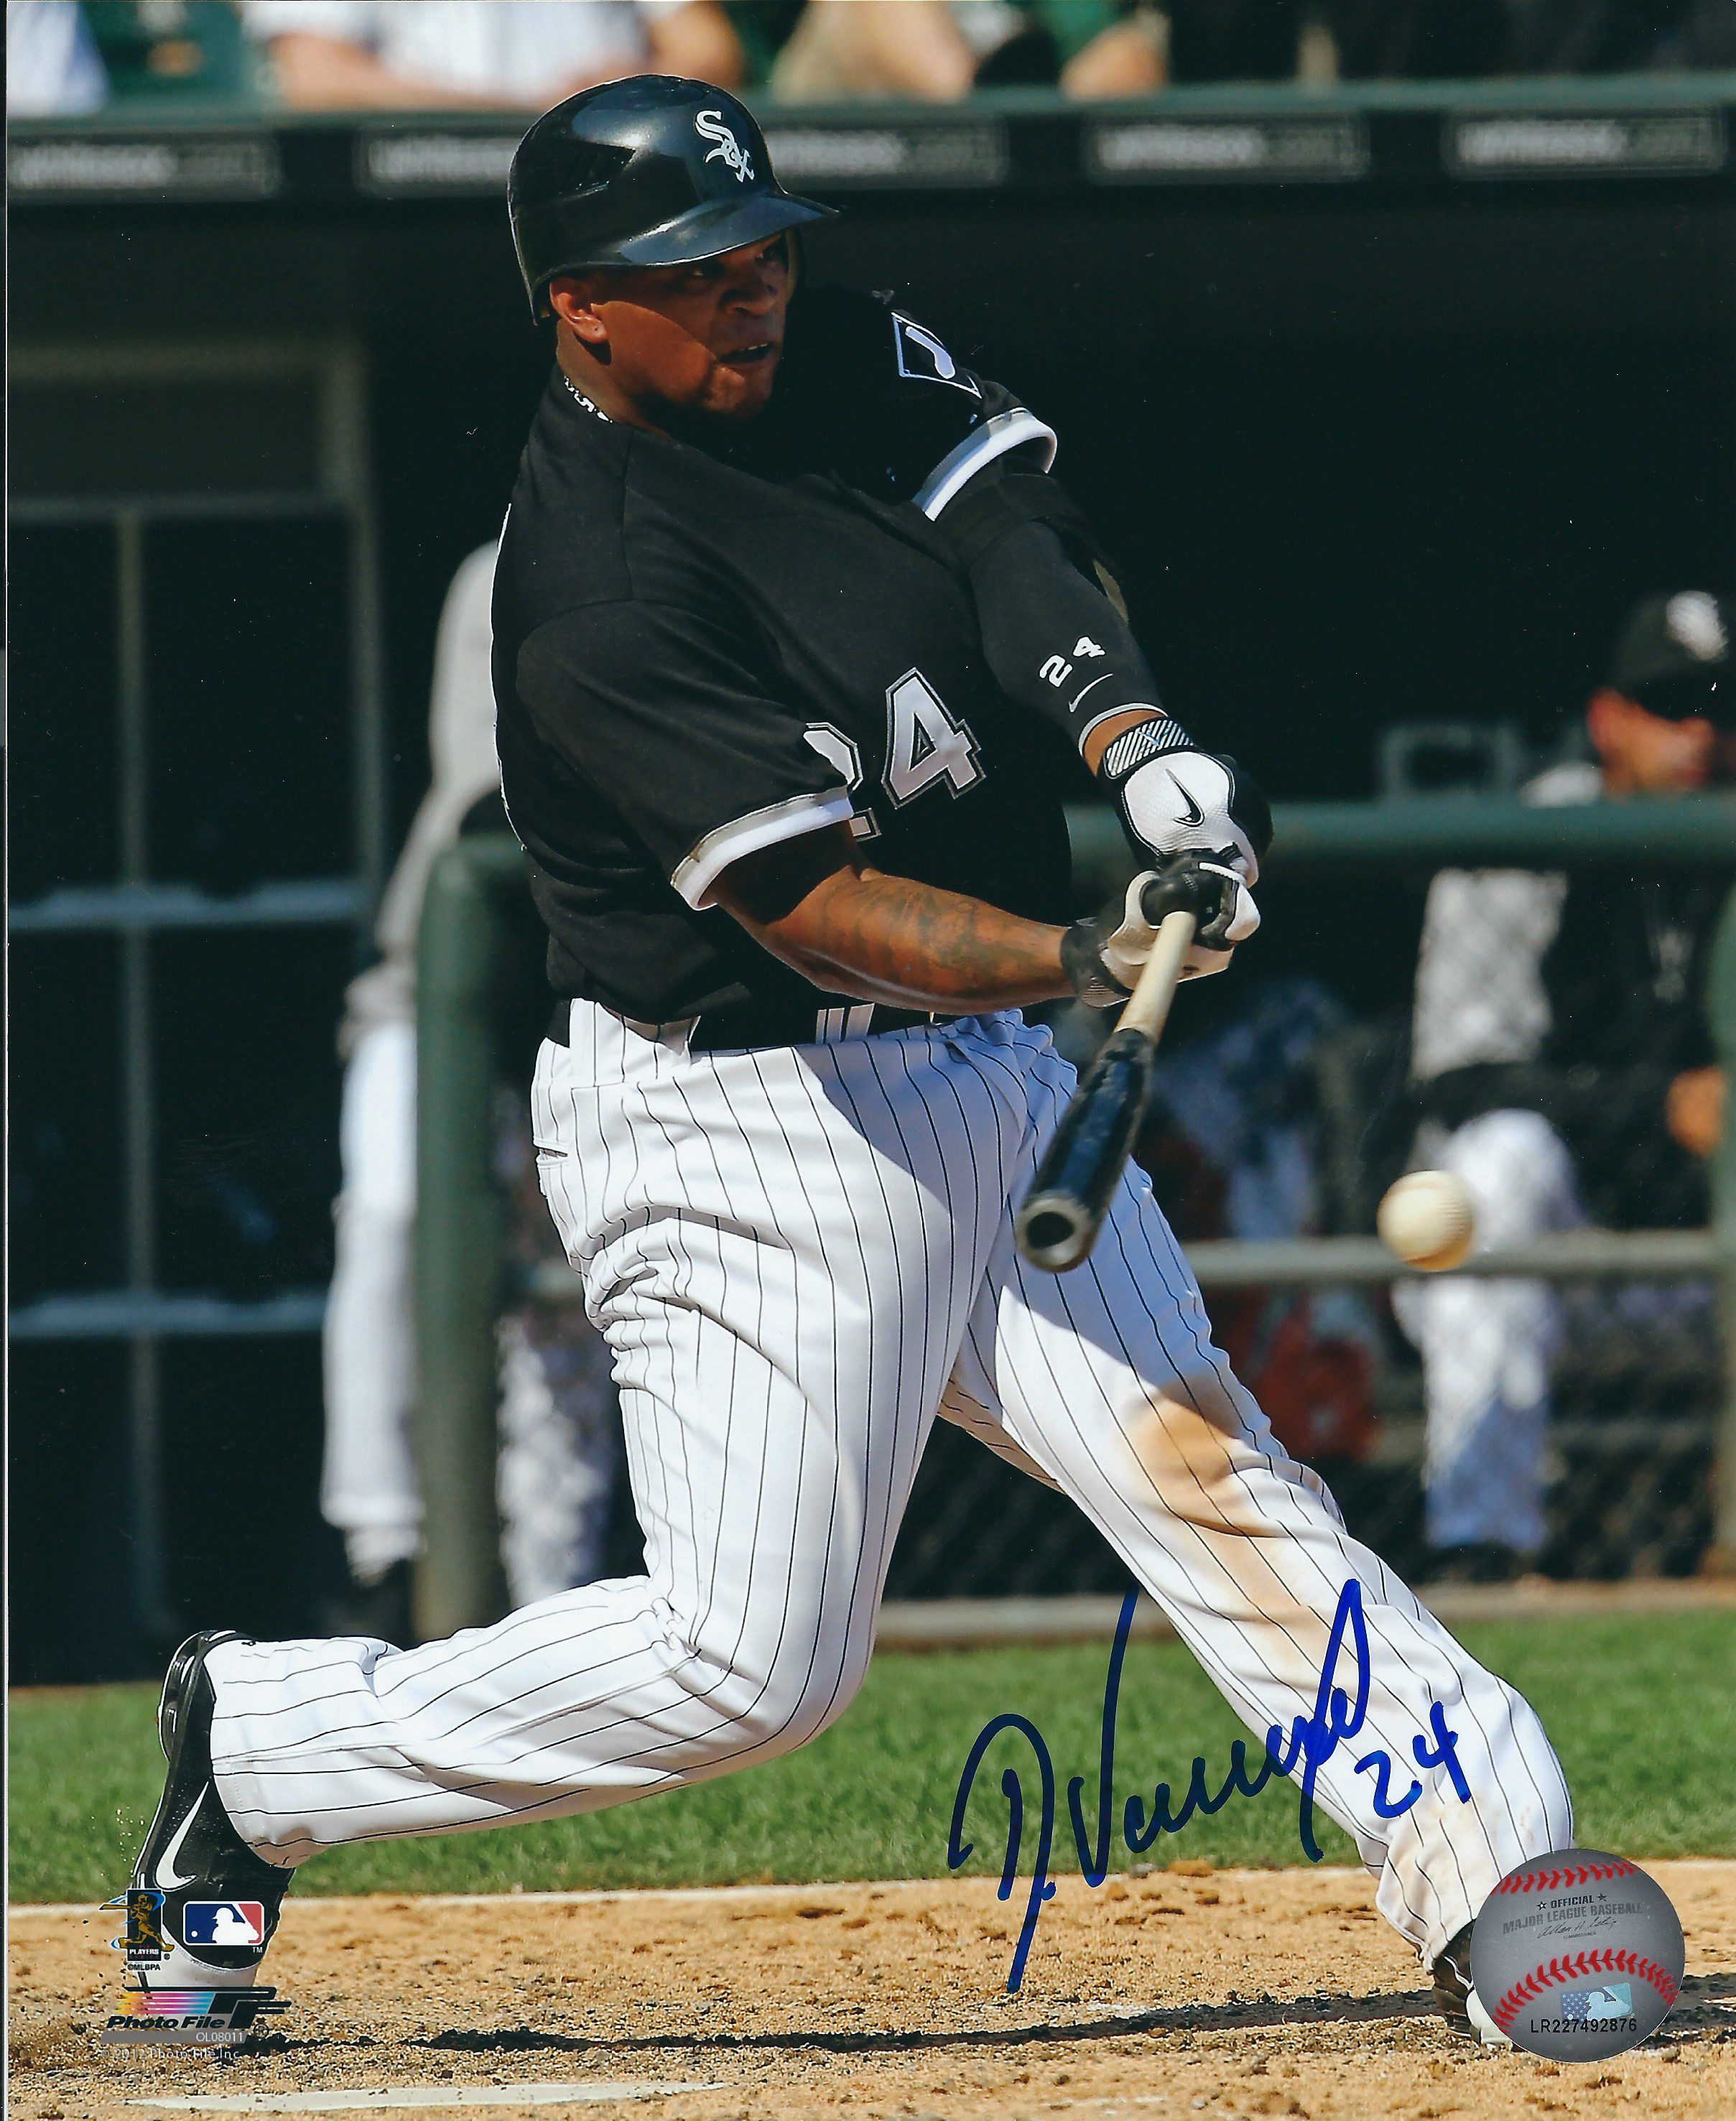 Autographed LUKE APPLING 8x10 Chicago White Sox Photo - Main Line Autographs